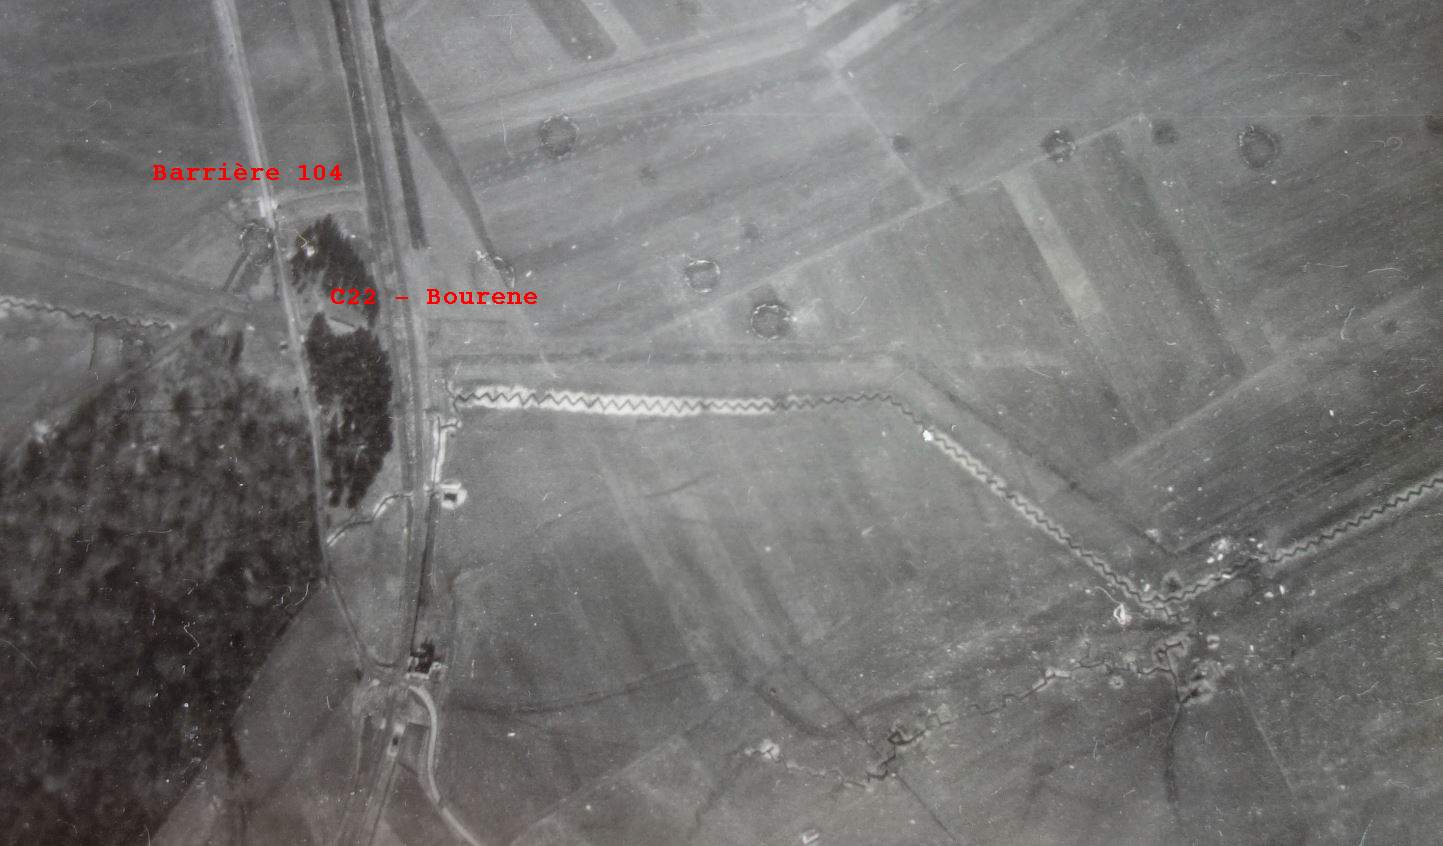 Ligne Maginot - BOURENE EST - C22 - (Casemate d'infanterie) - Sur cette vue aérienne on aperçoit le barrage 104, la casemate C22 et le réseau de rail et de tranchées qui le couvre.

Vue aérienne - Mission 60 Altitude 2000 - 9 mars 1940